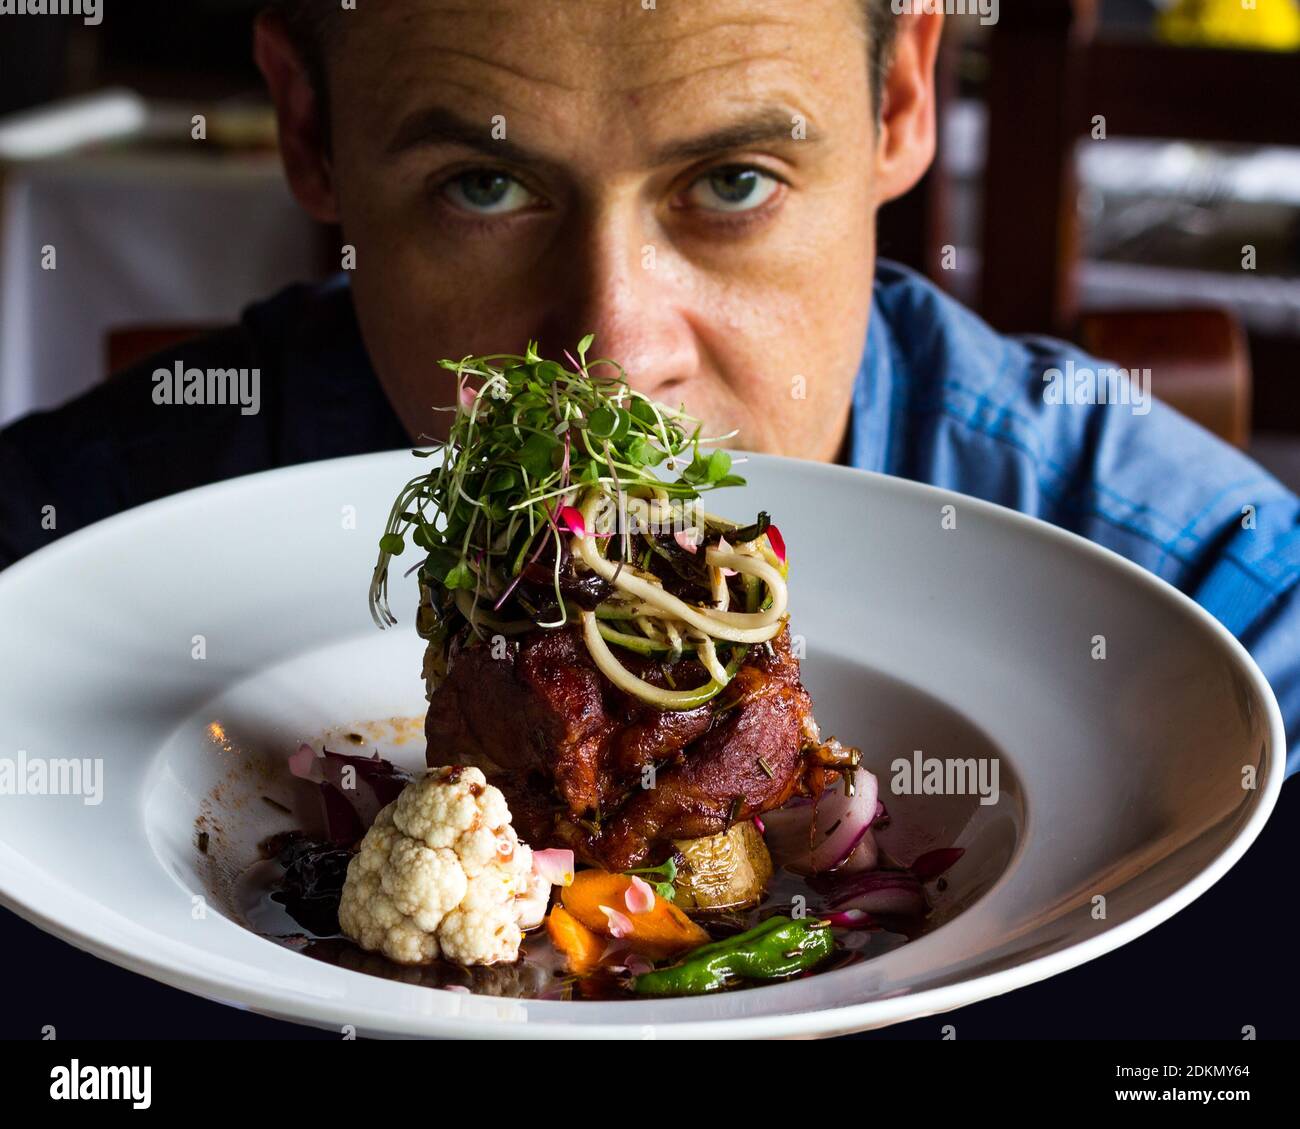 Portrait de l'homme avec la nourriture dans l'assiette Photo Stock - Alamy